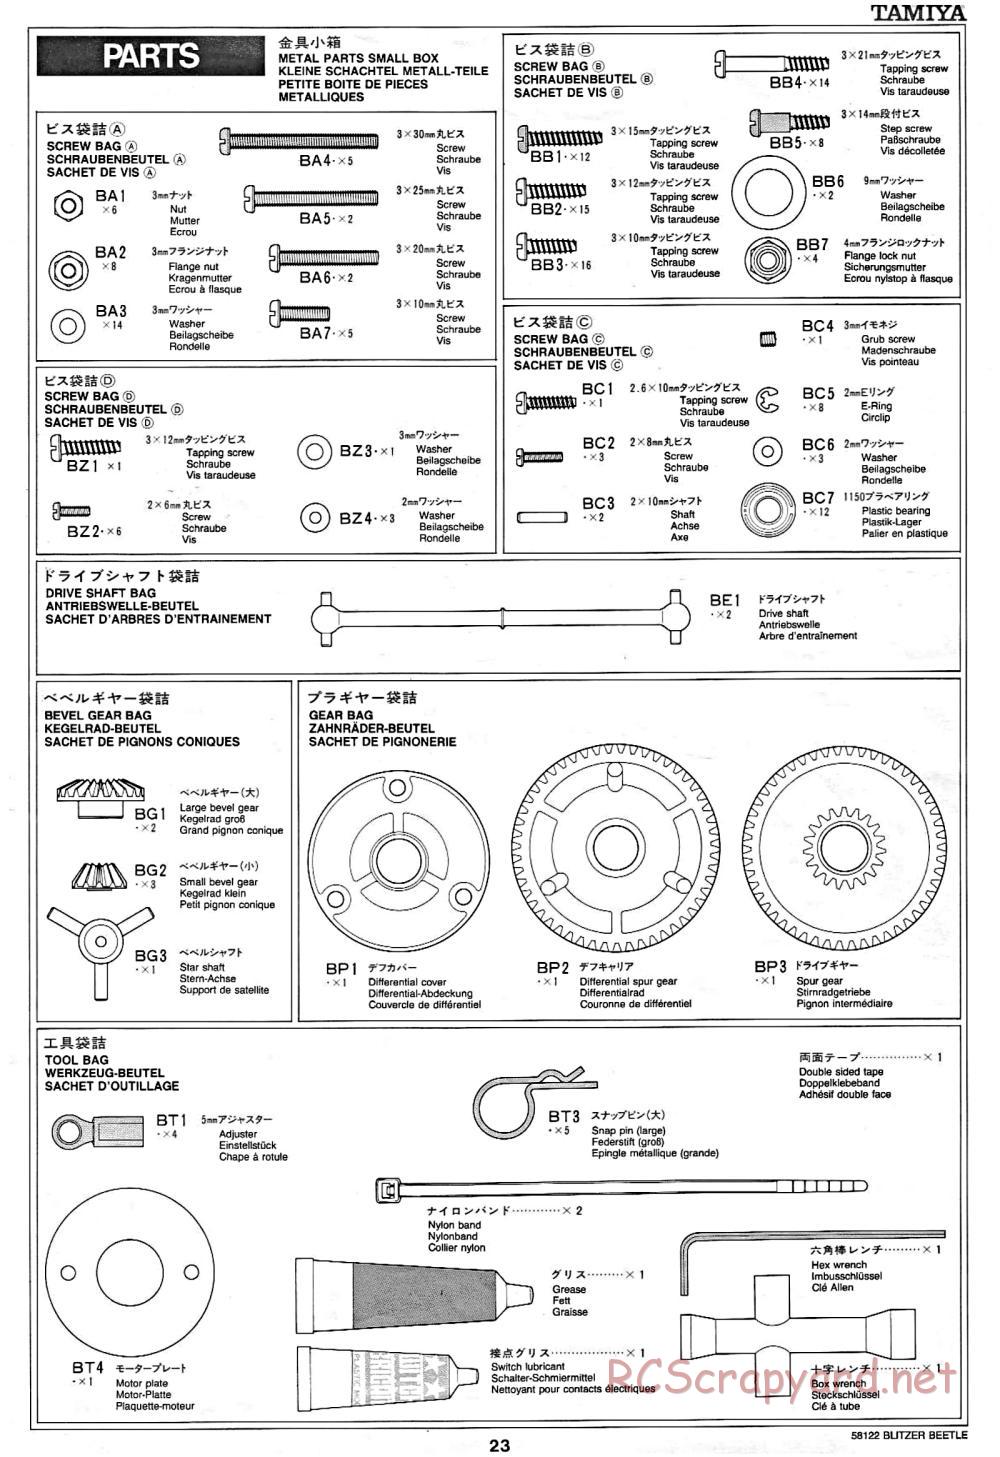 Tamiya - Blitzer Beetle Chassis - Manual - Page 23